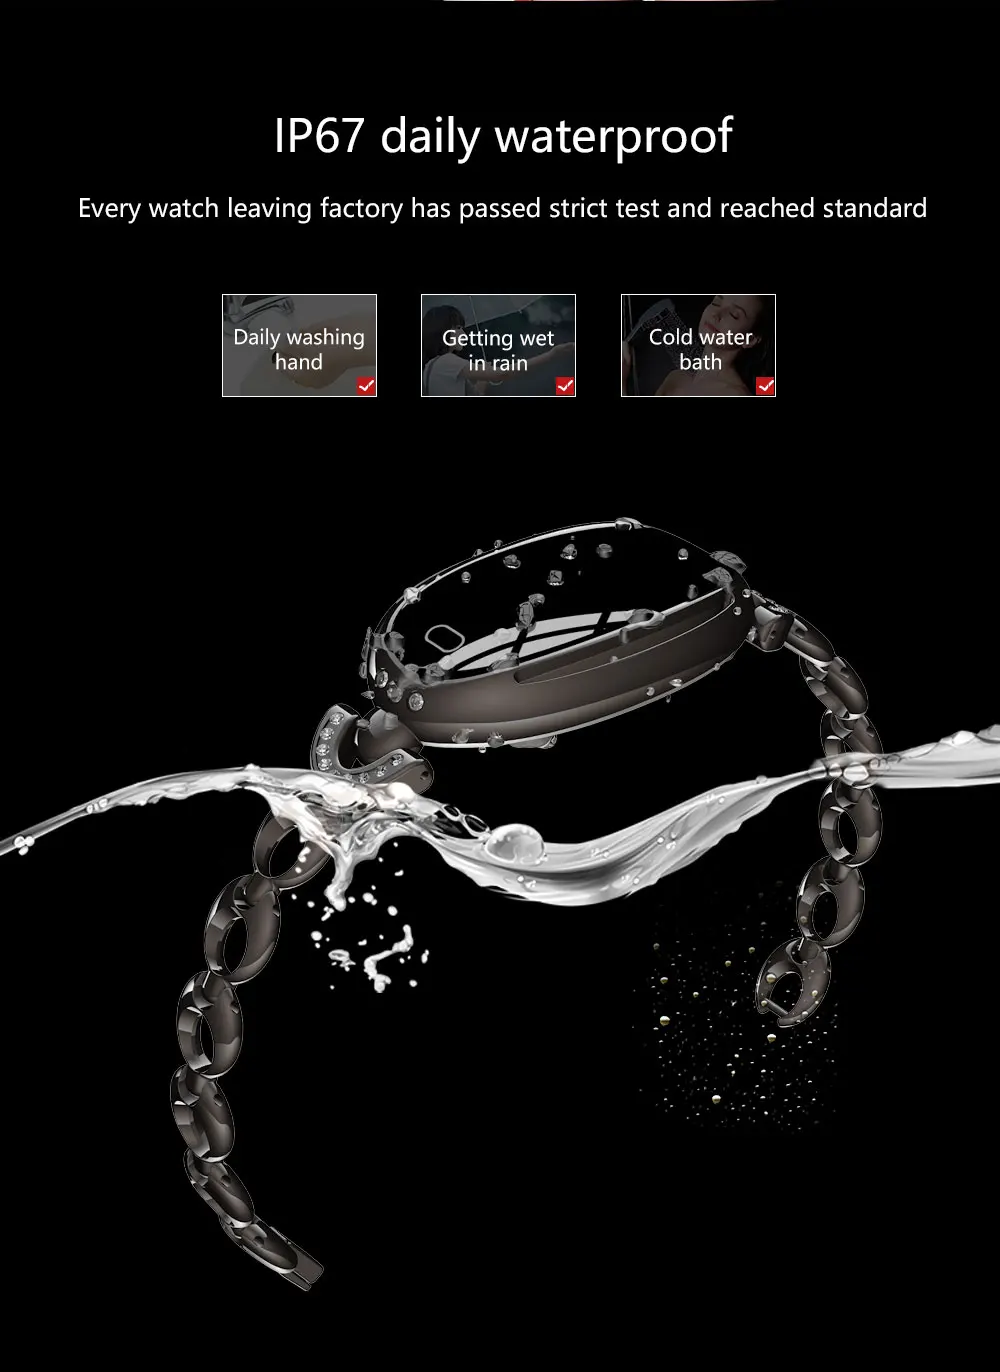 Женские часы фитнес спорт цифровые наручные часы лучший бренд класса люкс Smartwatch Браслет приборы для измерения артериального давления